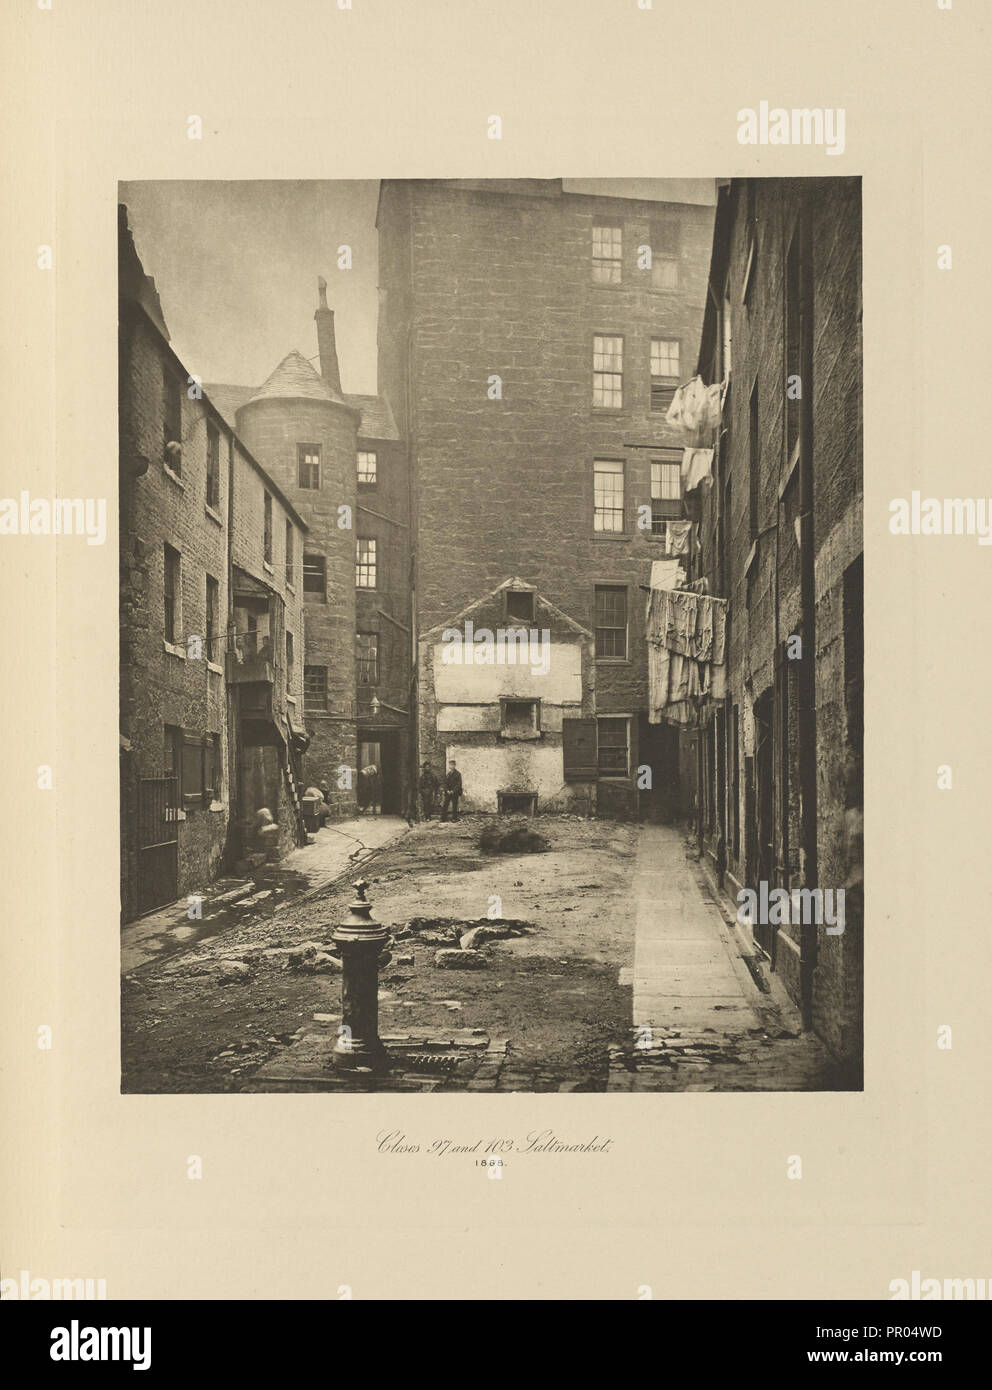 Chiude n. 97 e 103 Saltmarket; Thomas Annan, Scozzese,1829 - 1887, Glasgow, Scozia; negativa 1868; stampa 1900 Foto Stock